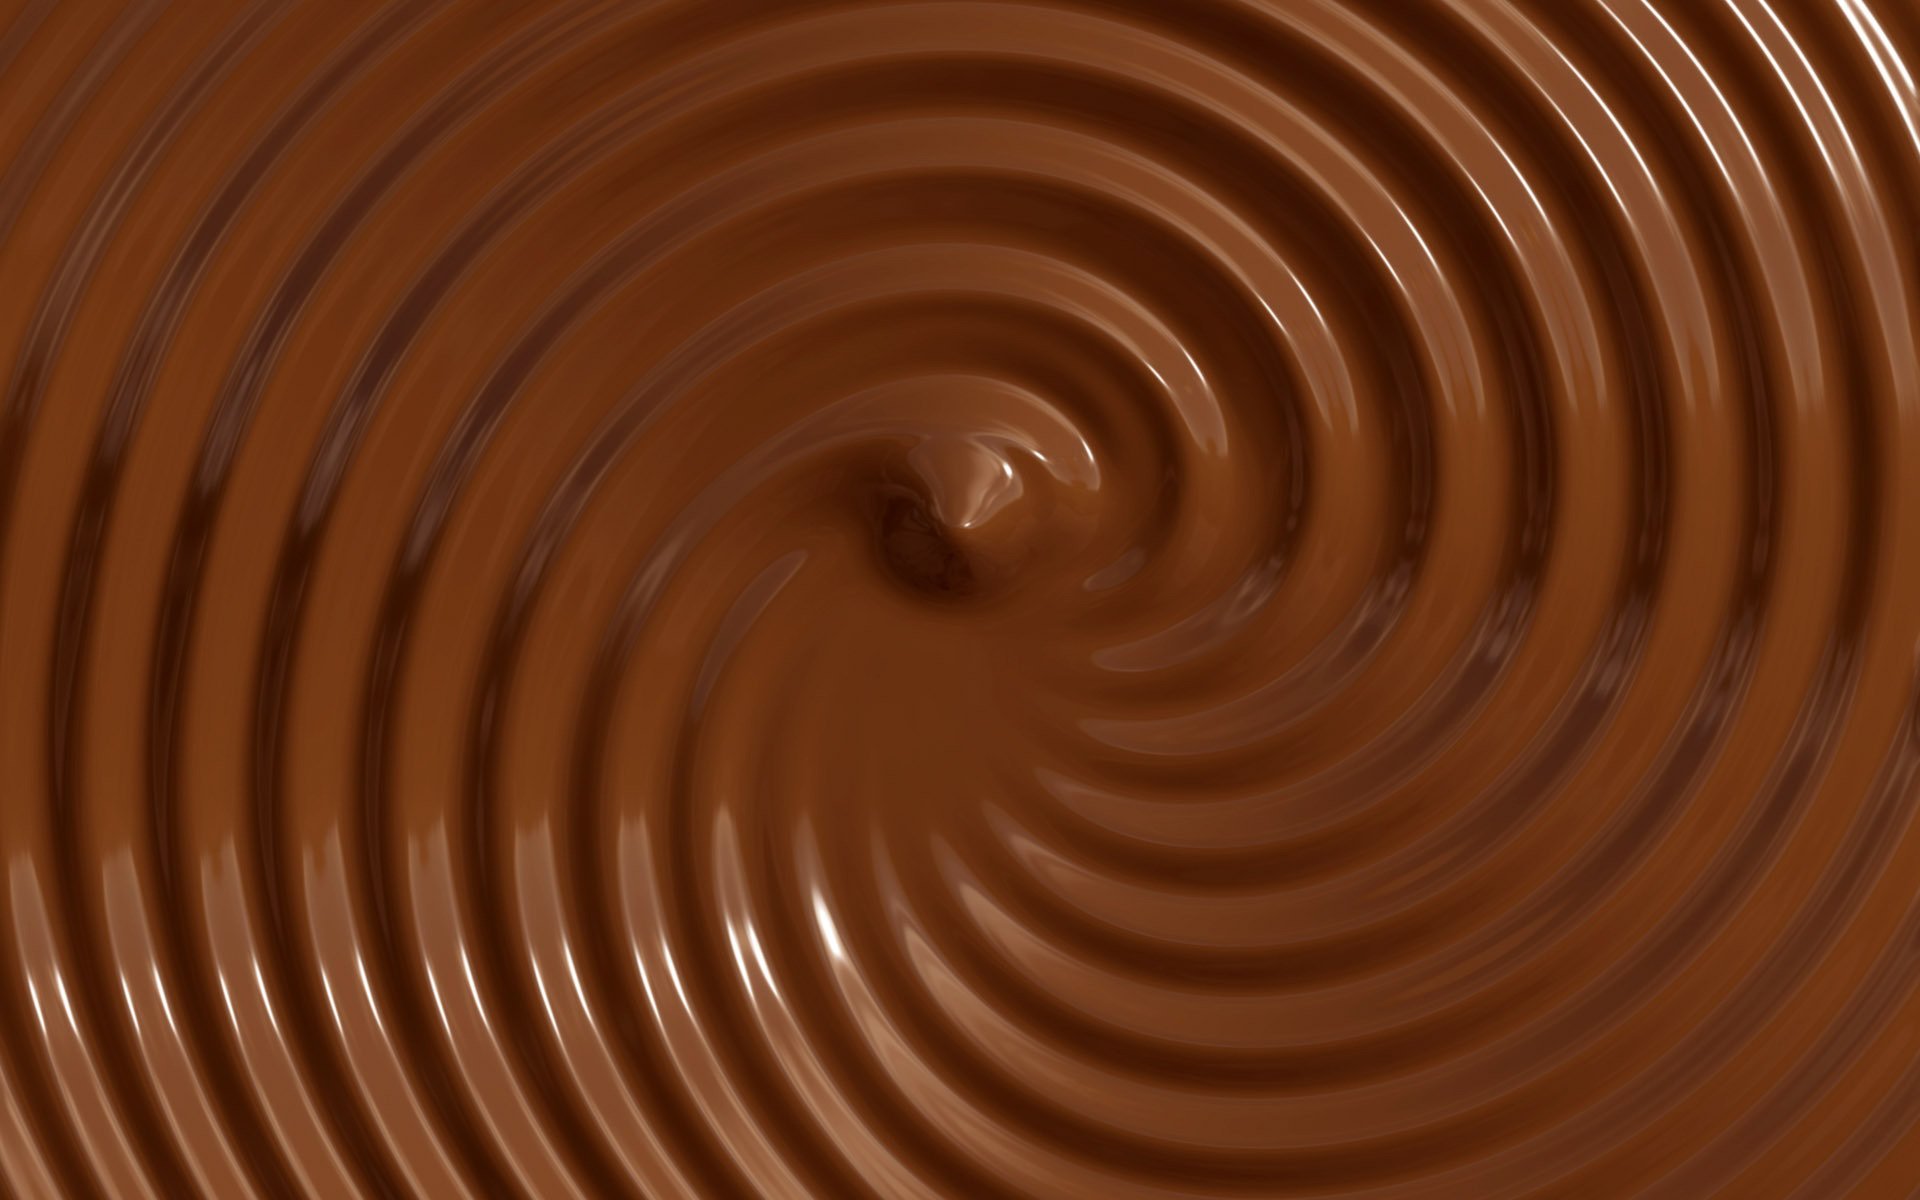 Обои с тегом:шоколад, текстура, коричневый фон, круги, жидкий.